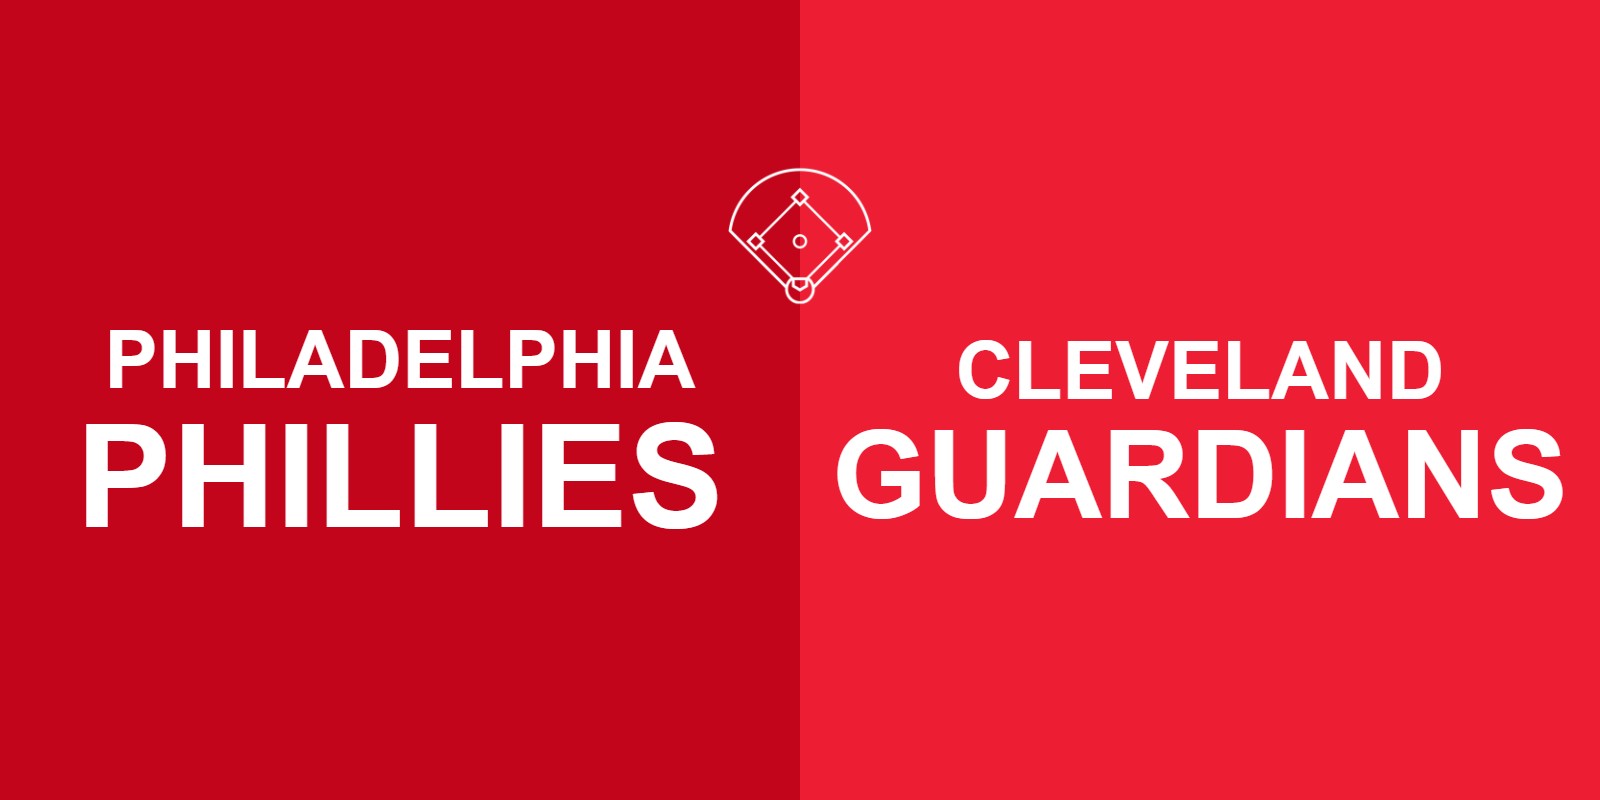 Phillies vs Guardians